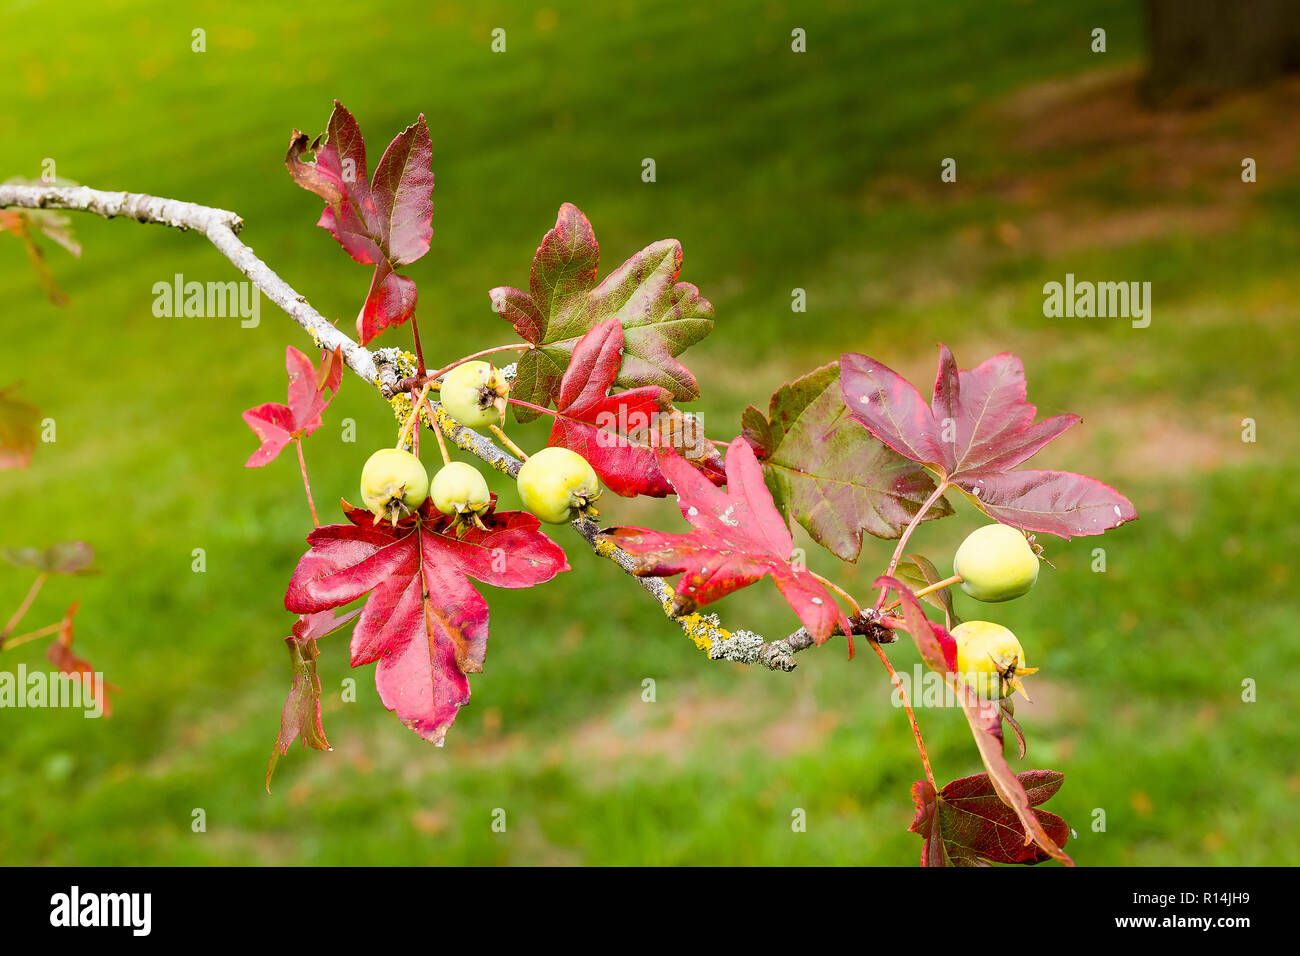 Ahorn blätterte Crab Apple tree zeigt Früchte und Blätter im Herbst. Malus trilobata Scots Guards. Stockfoto